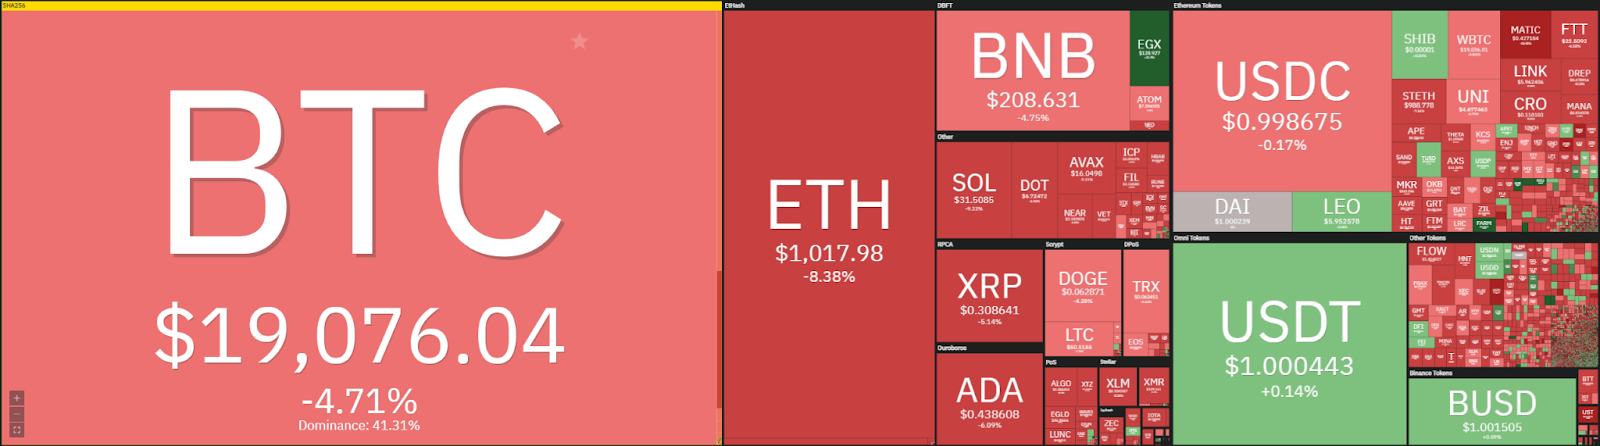 Análisis de precios de Ethereum: ETH cae aún más, ¿parece rápidamente romper $ 1,000? 1